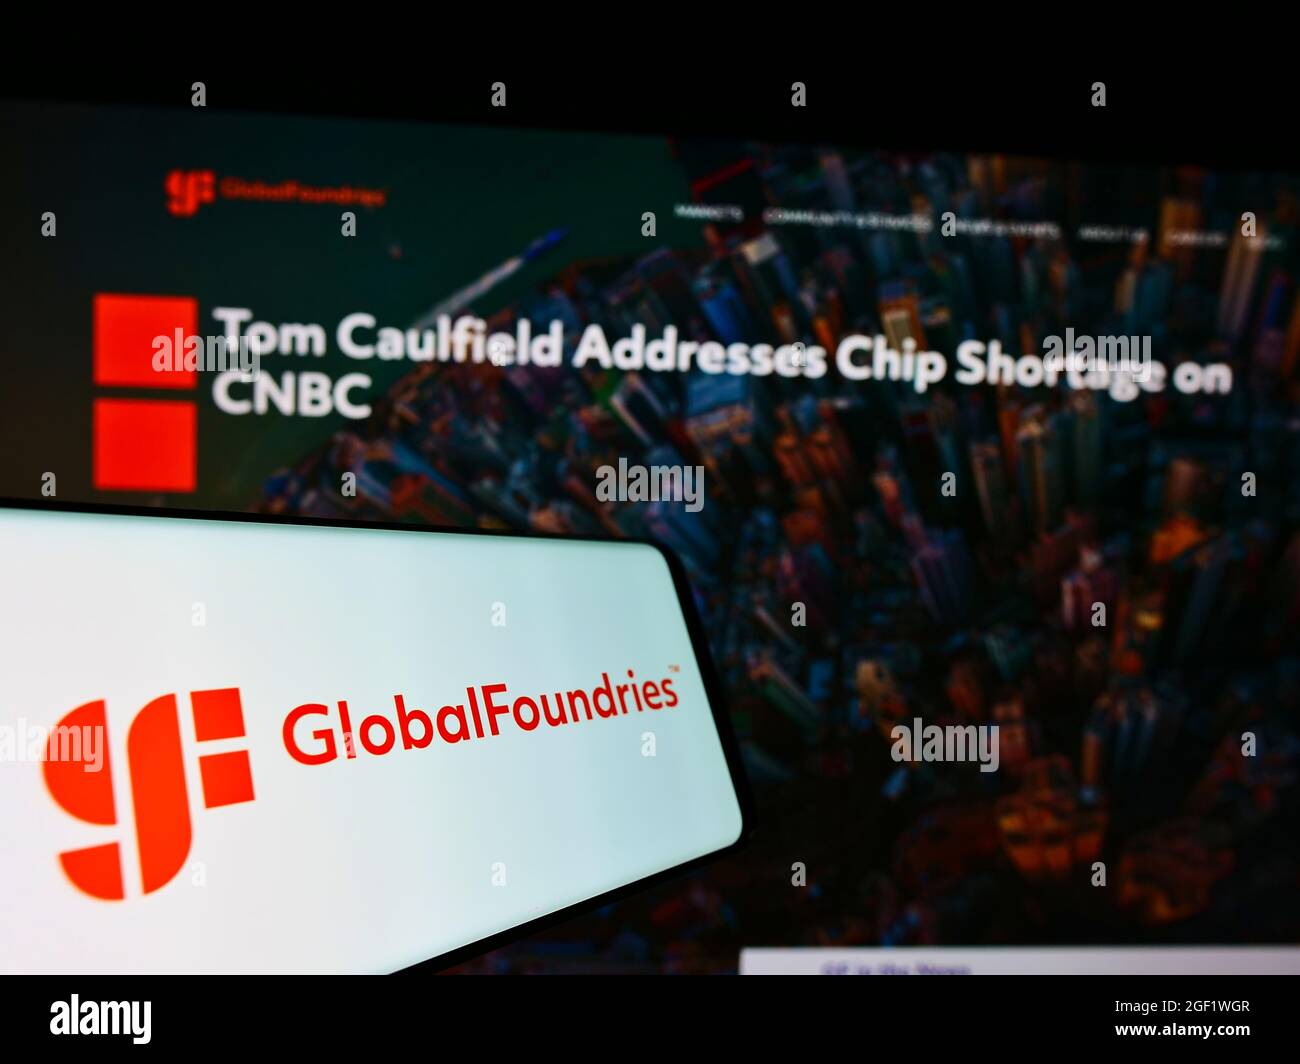 Telefono cellulare con logo della società americana di semiconduttori GlobalFoundries Inc. (GF) sullo schermo di fronte al sito web. Concentratevi sul centro-destra del display del telefono. Foto Stock